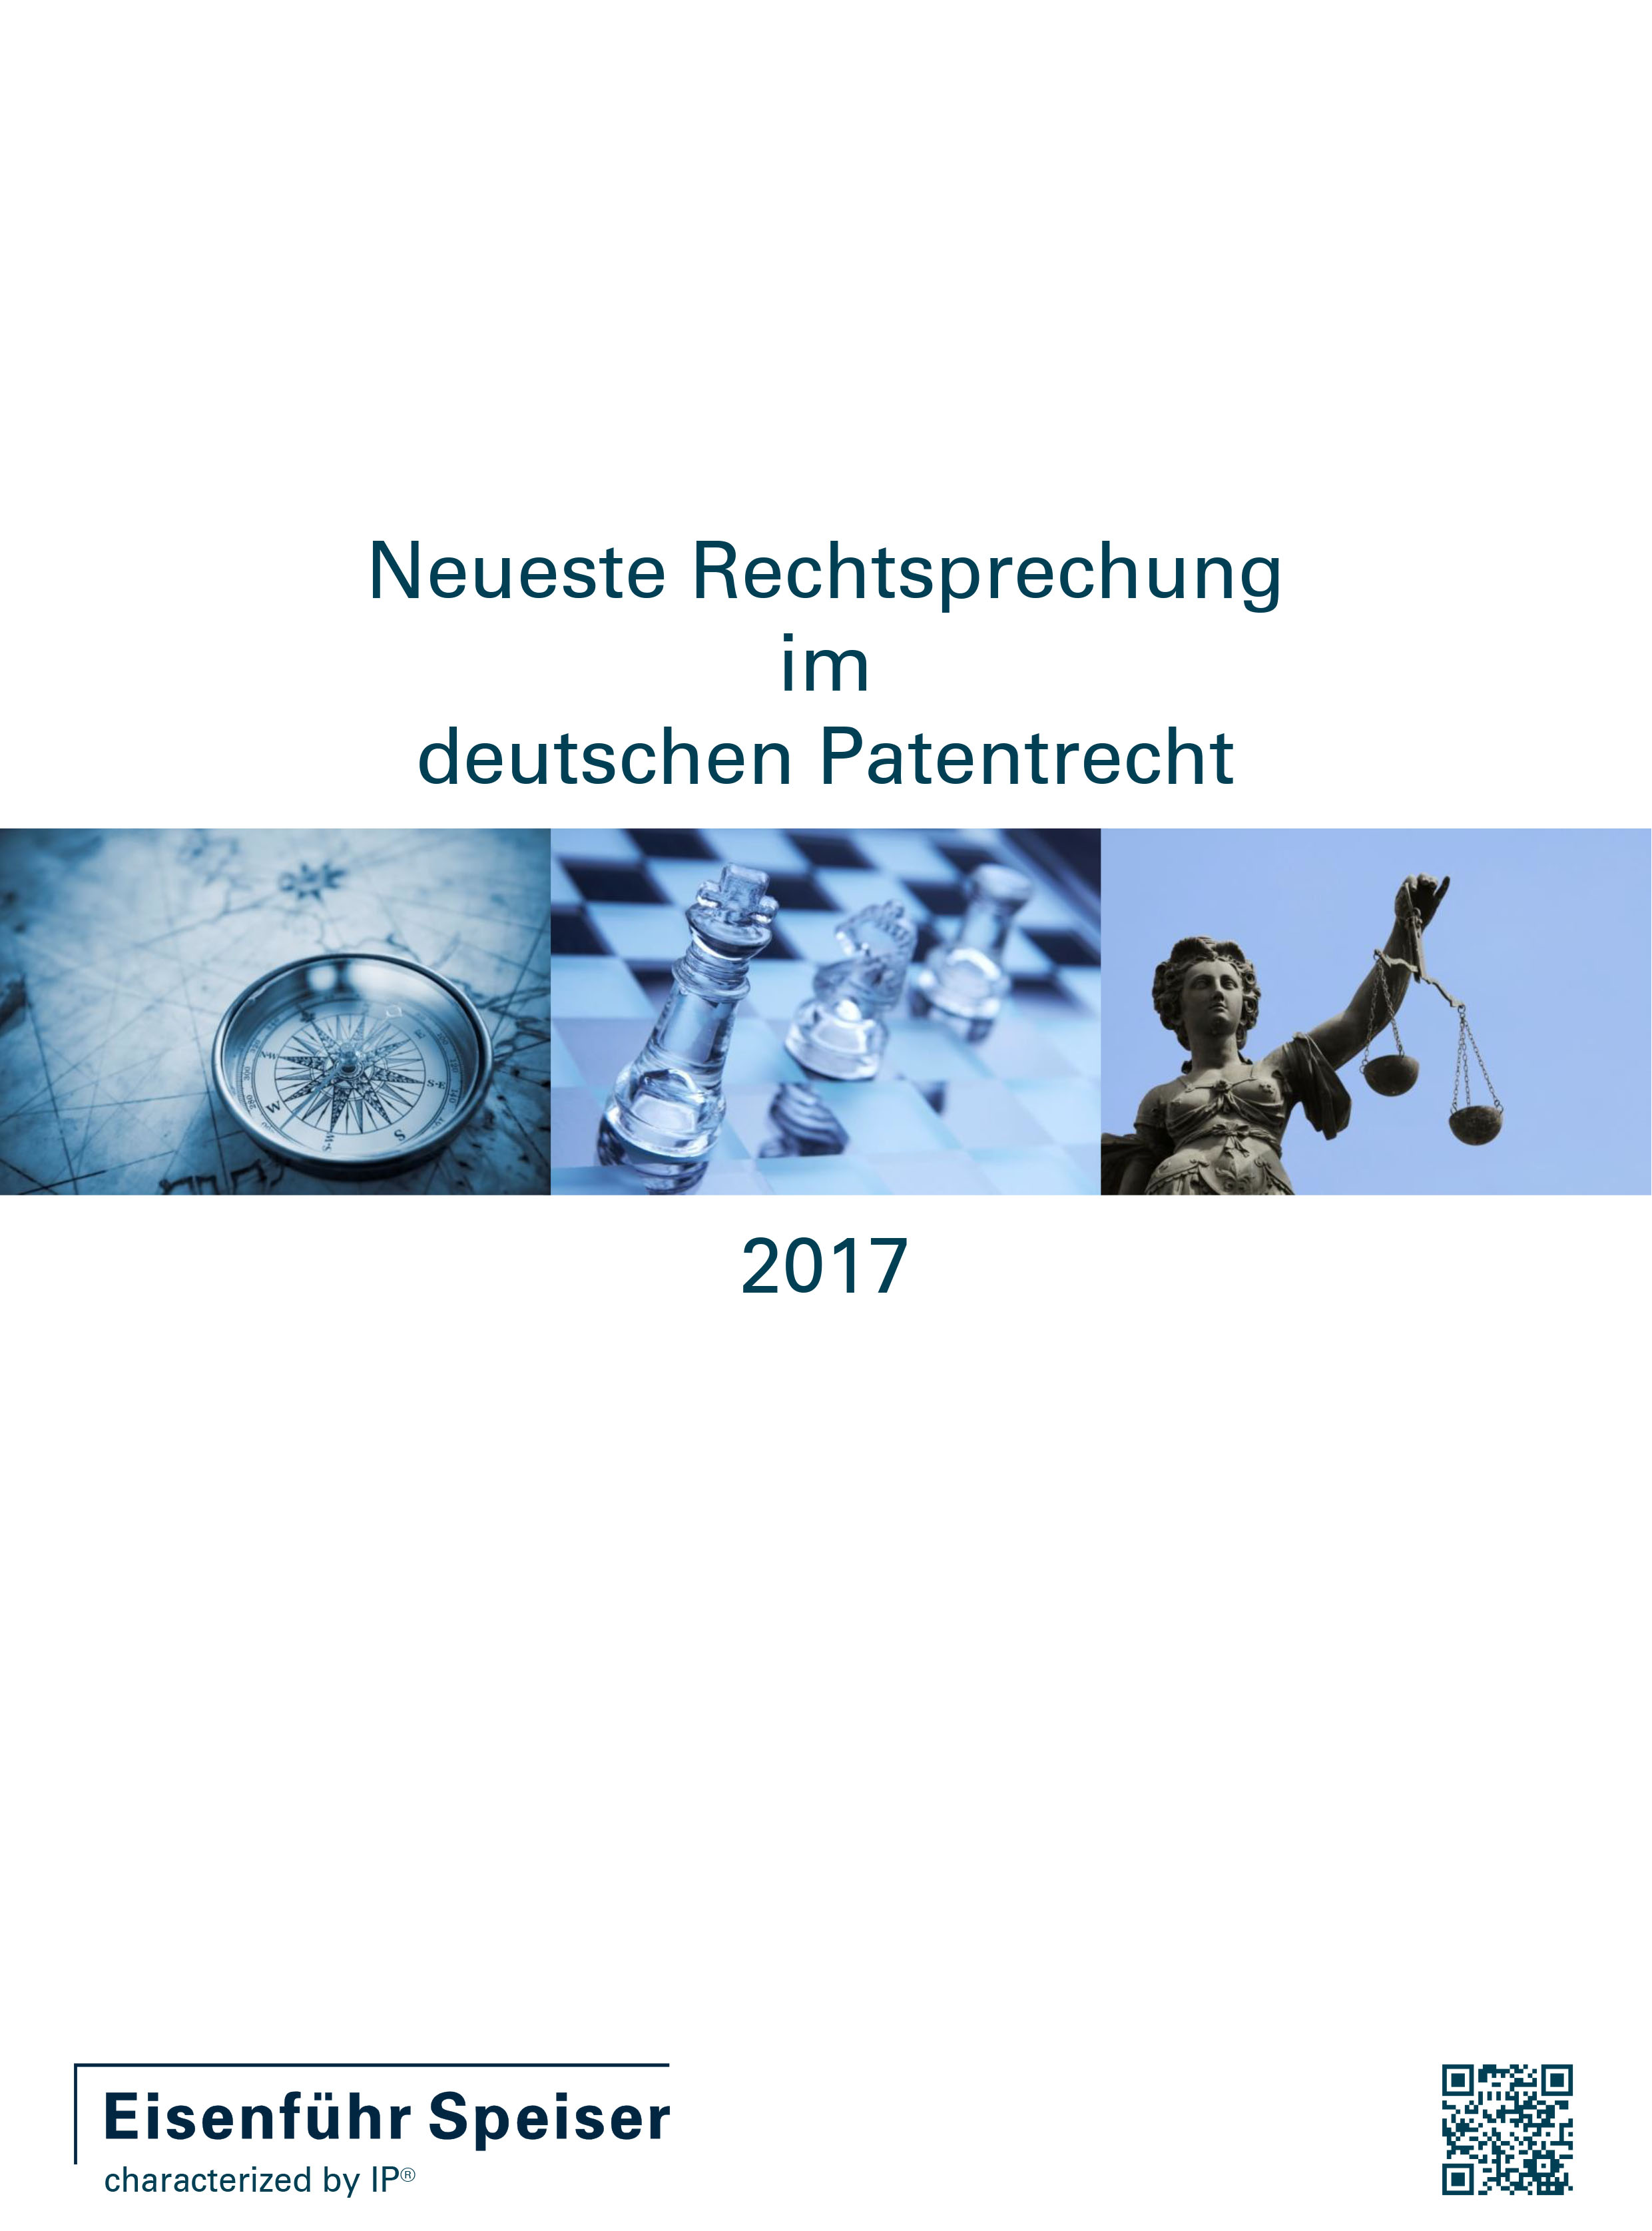 Neueste Rechtsprechung im deutschen Patentrecht